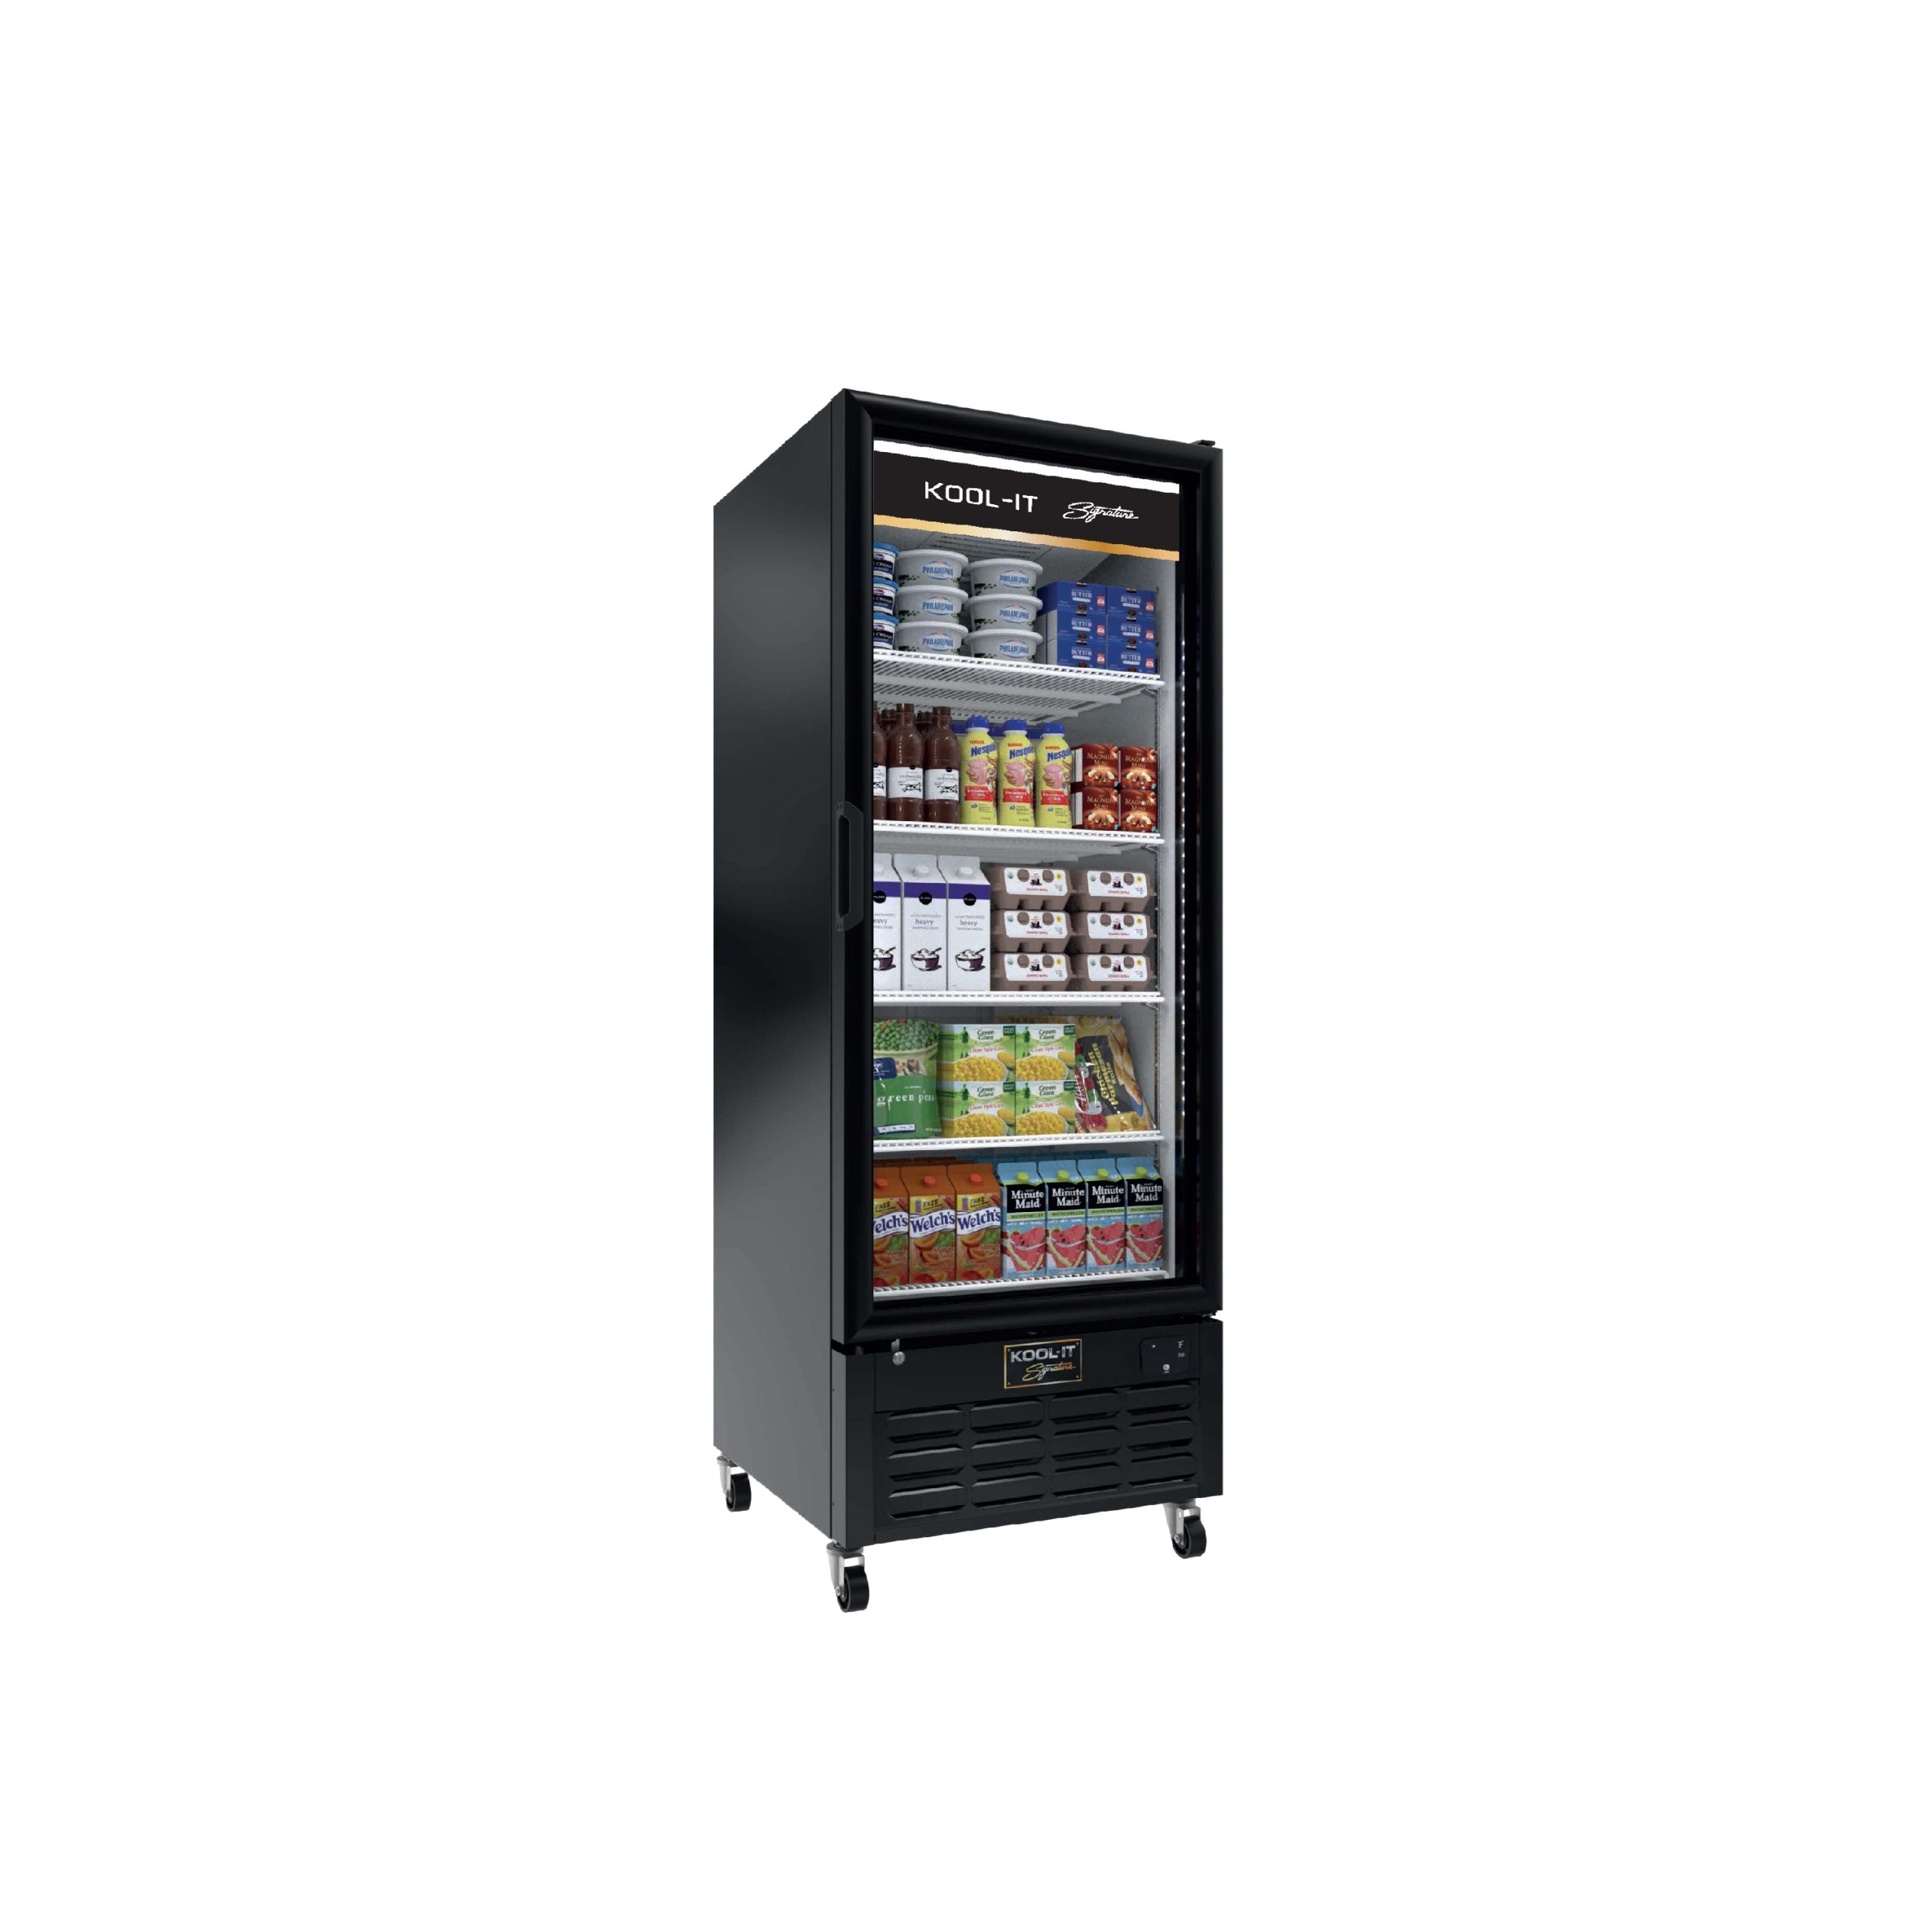 Kool-It - LX-24RB, 29.5" Single Glass Door Merchandiser Refrigerator